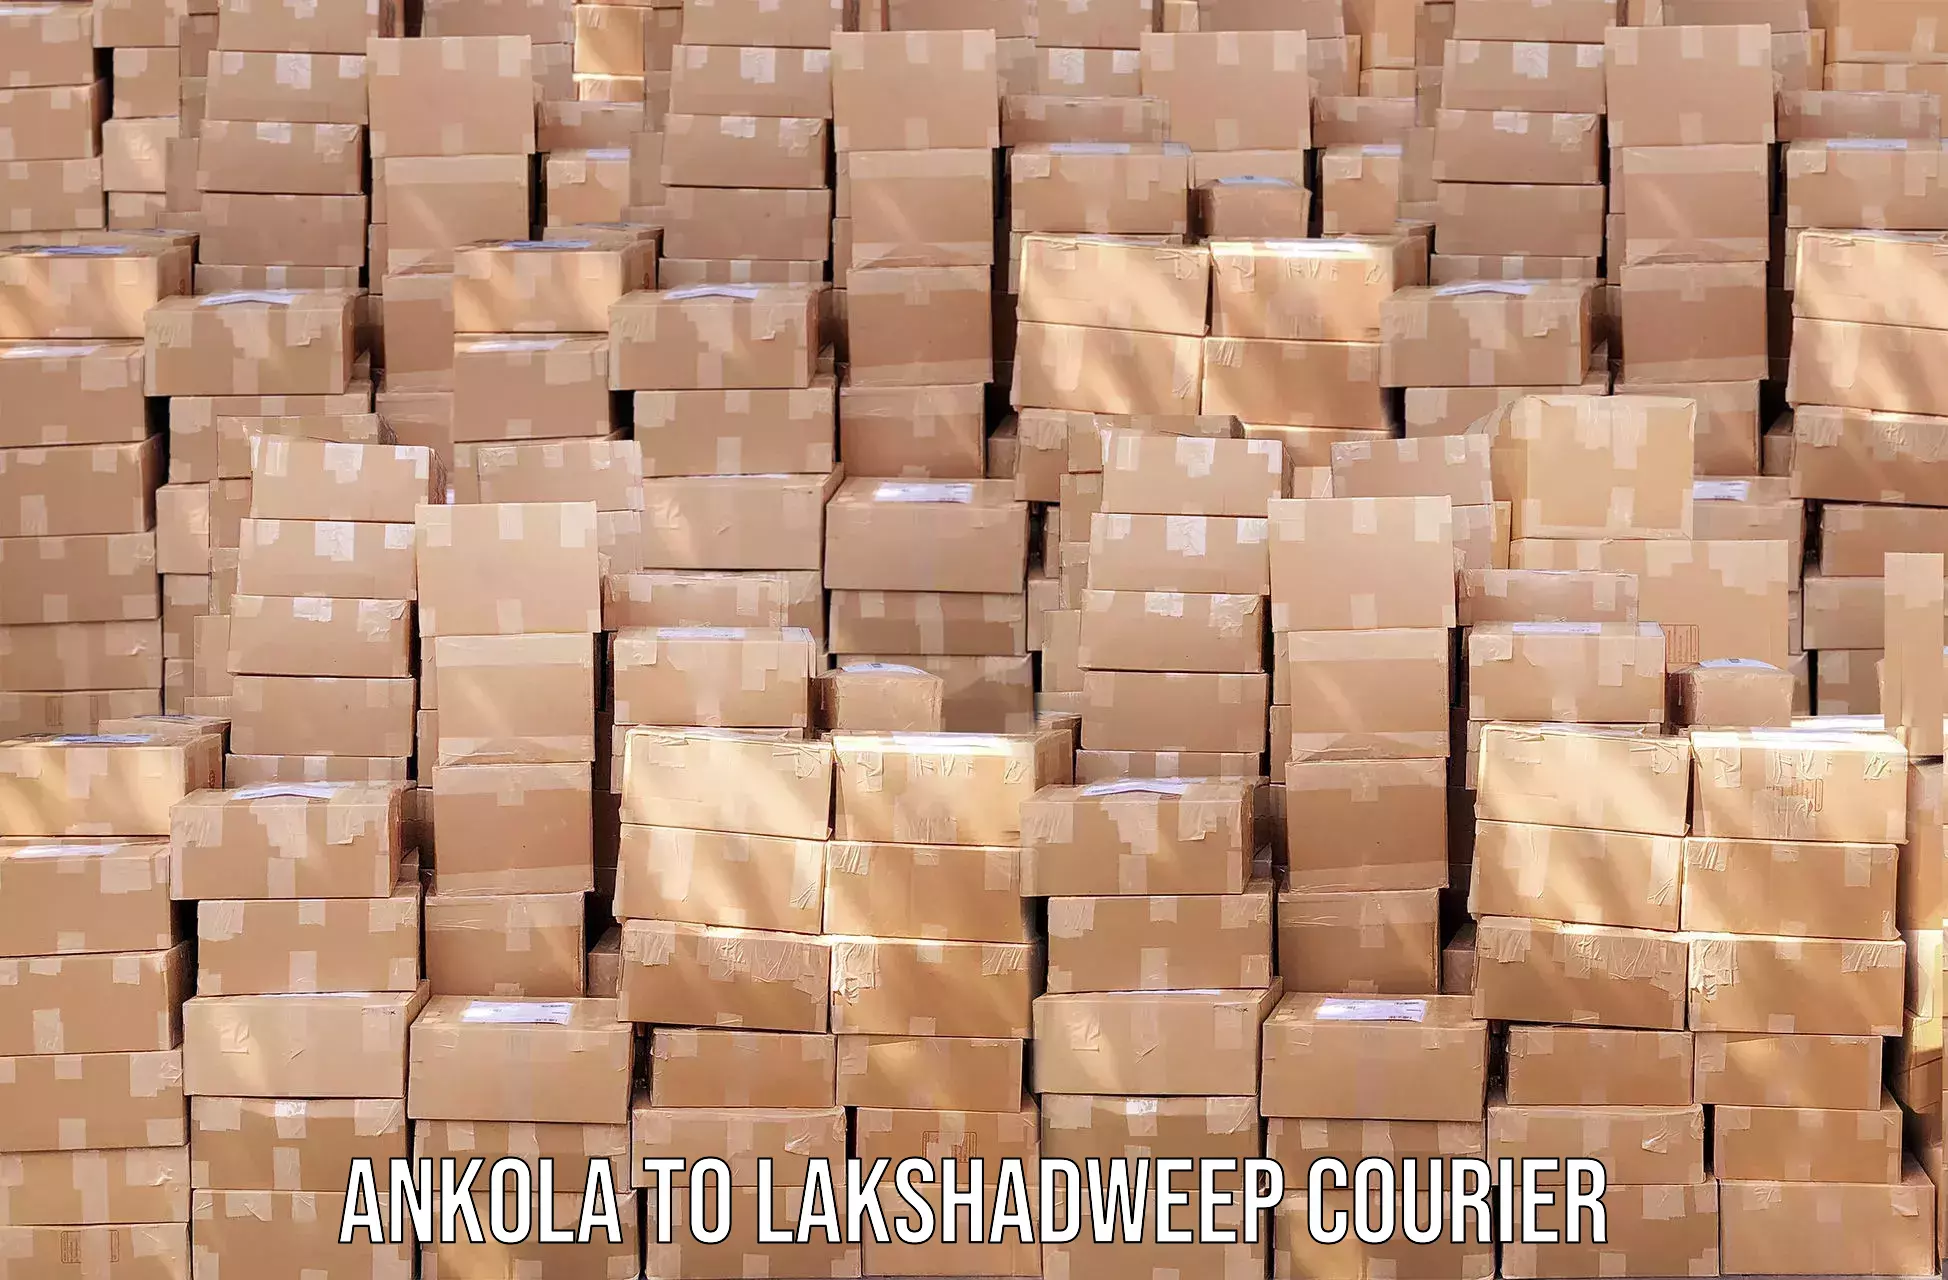 Global shipping solutions Ankola to Lakshadweep